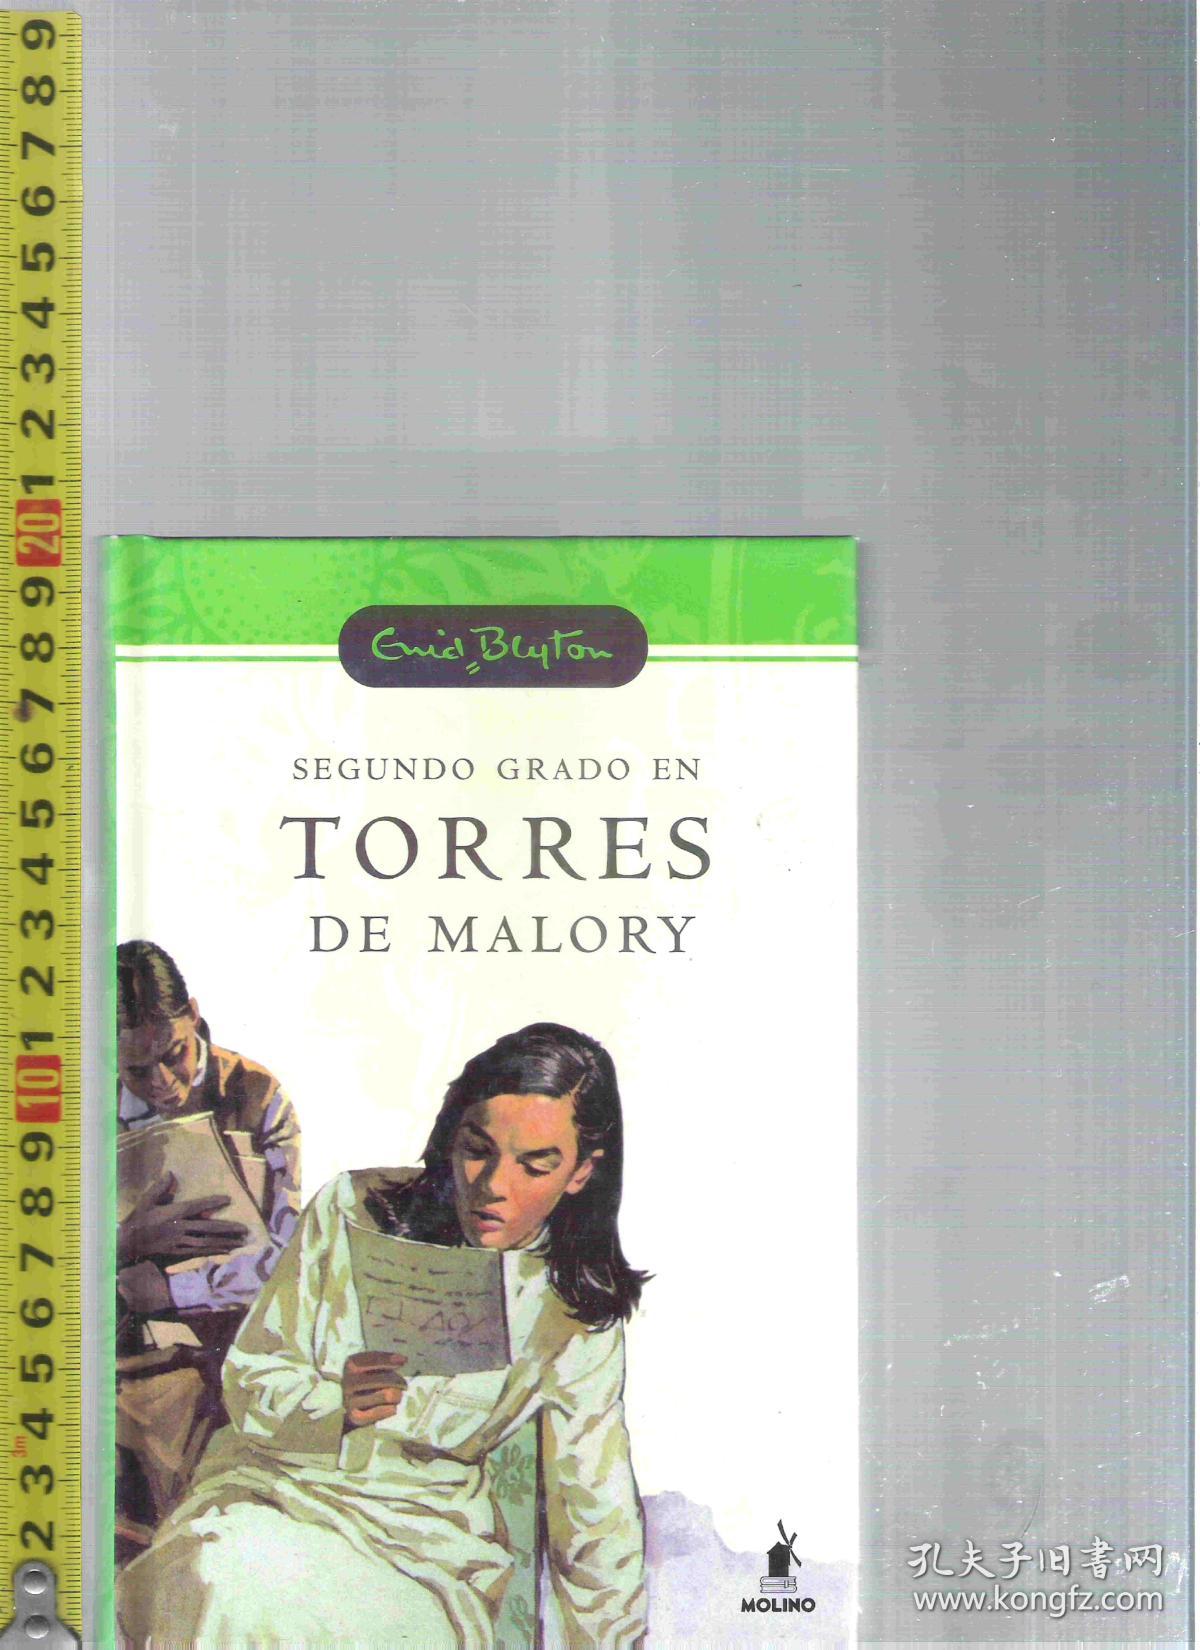 原版西班牙语小说 Segundo Grado en Torres de Malory / Enid Blyton【店里有一些西班牙语和意大利语的原版小说欢迎选购】